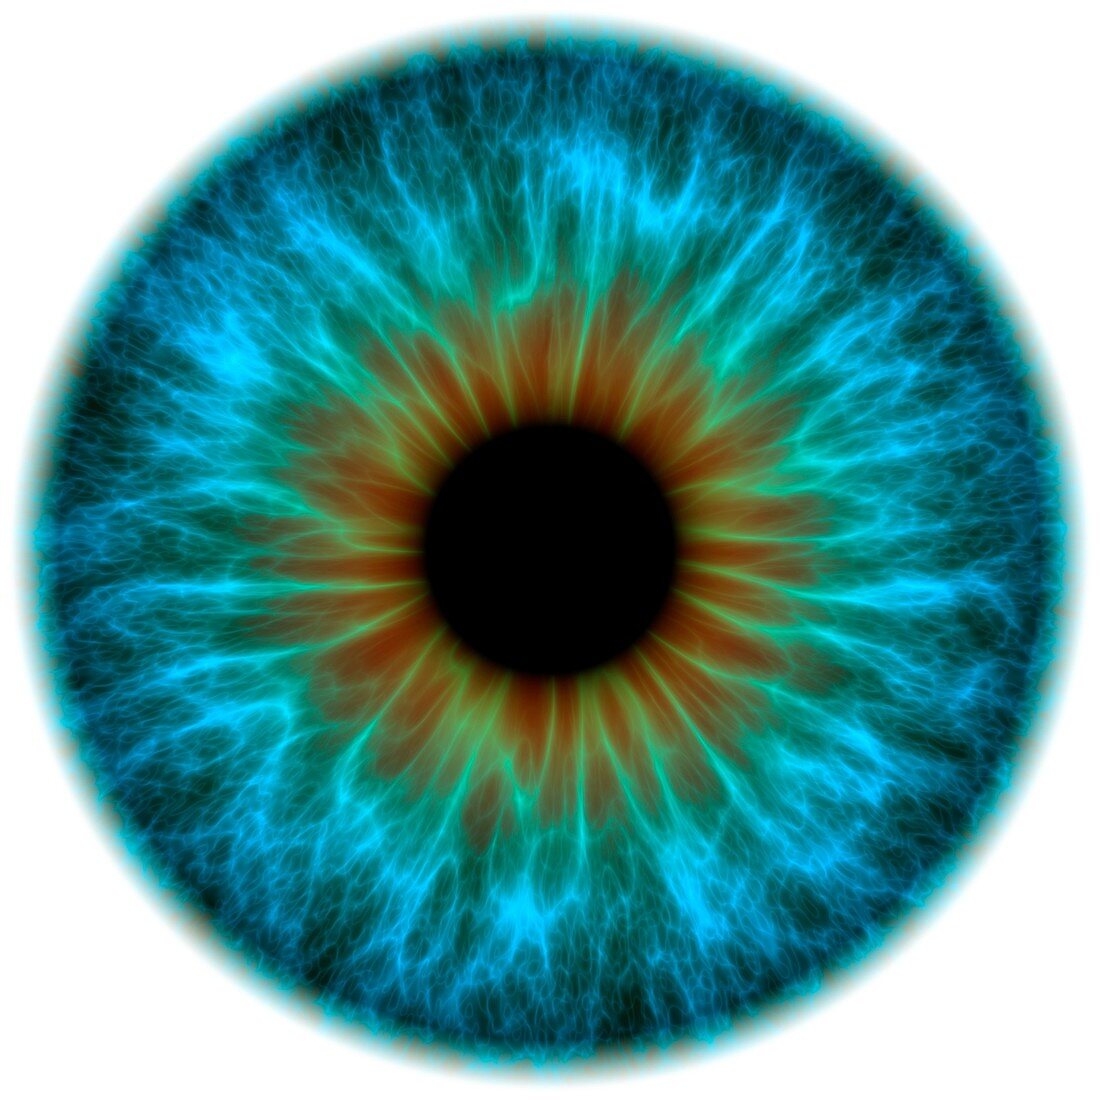 Blue eye,artwork